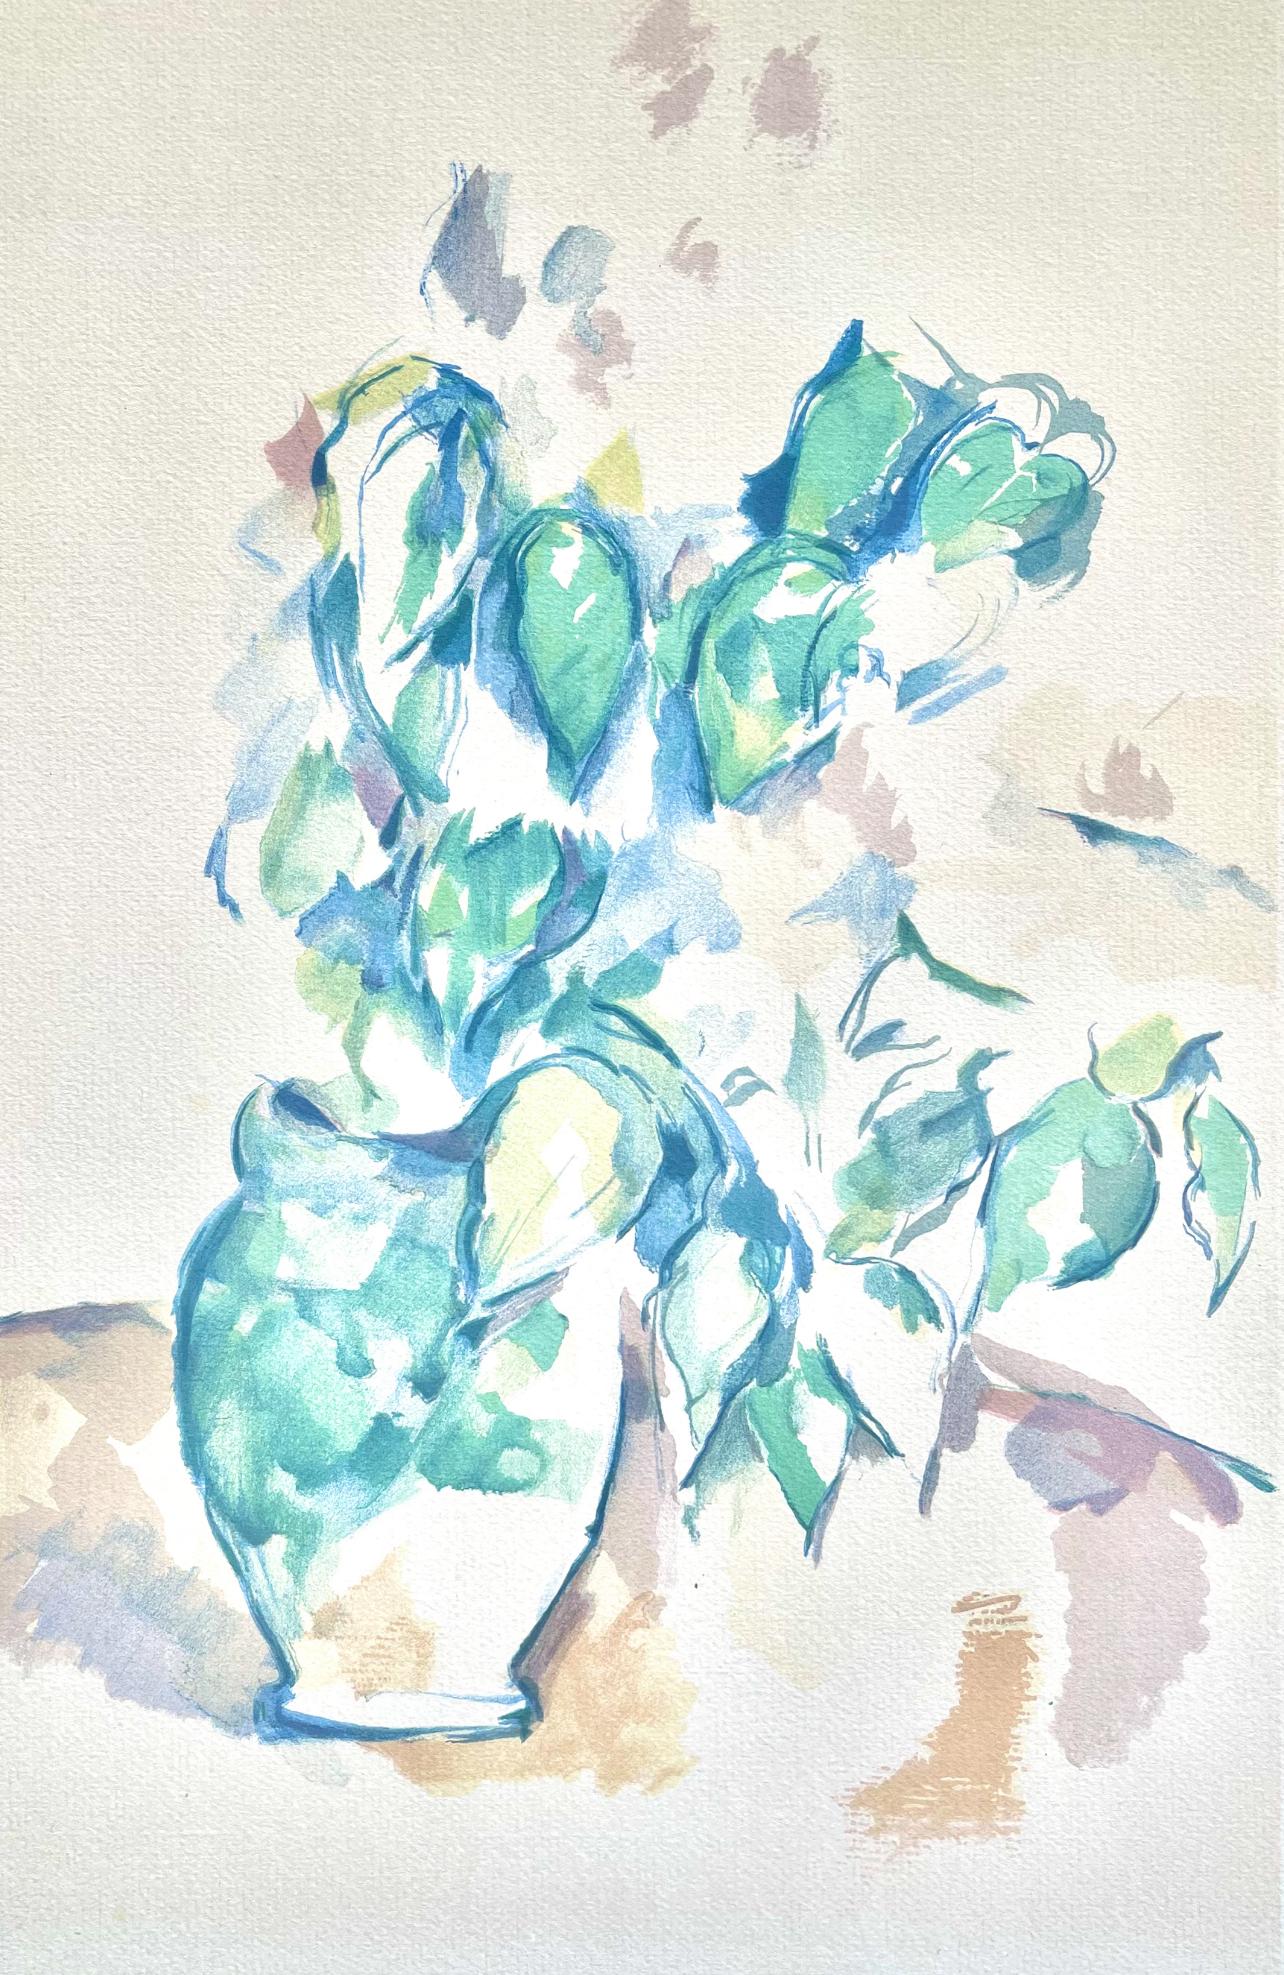 Paul Cézanne Landscape Print - Cézanne, Leaves in a Vase, Cézanne: Ten Water Colors (after)